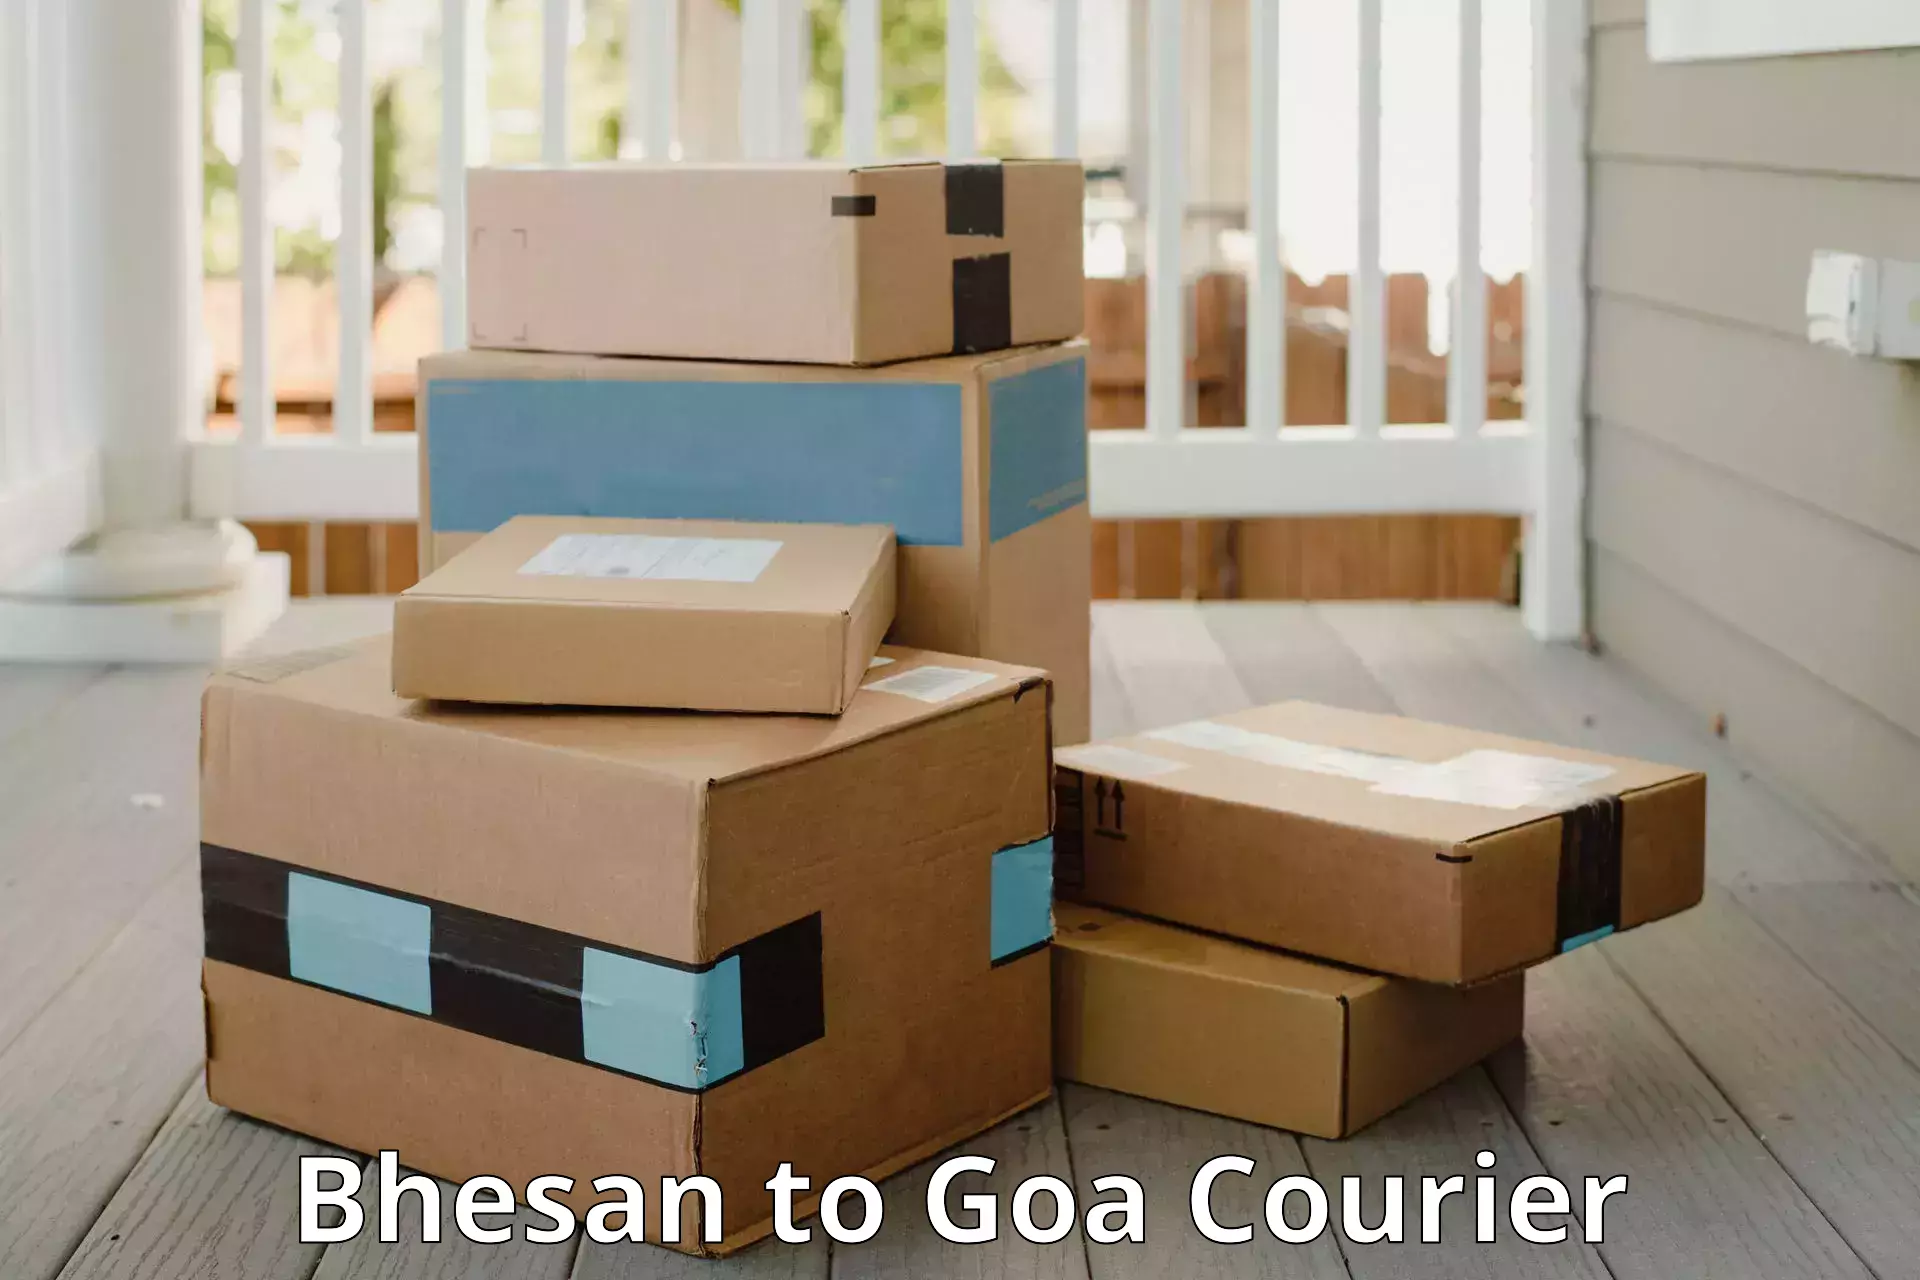 Luggage shipment tracking Bhesan to Goa